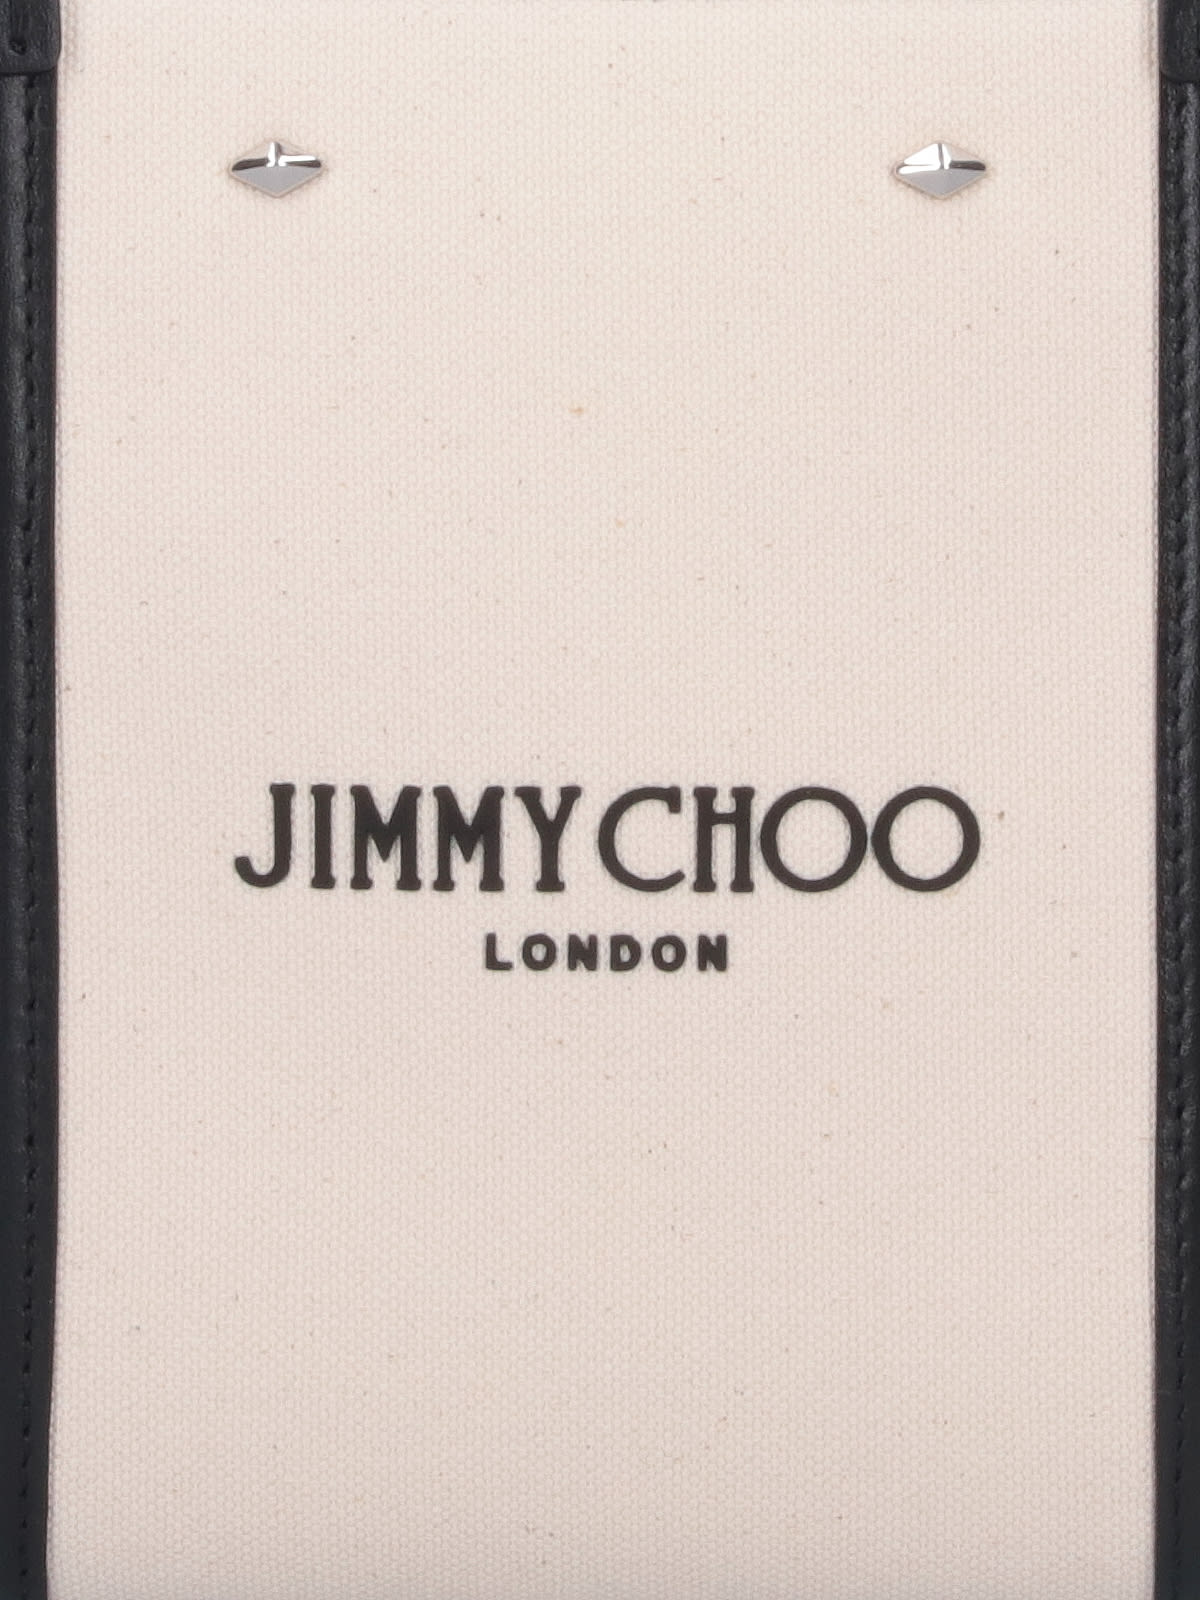 Shop Jimmy Choo N/s Mini Tote Bag In Crema